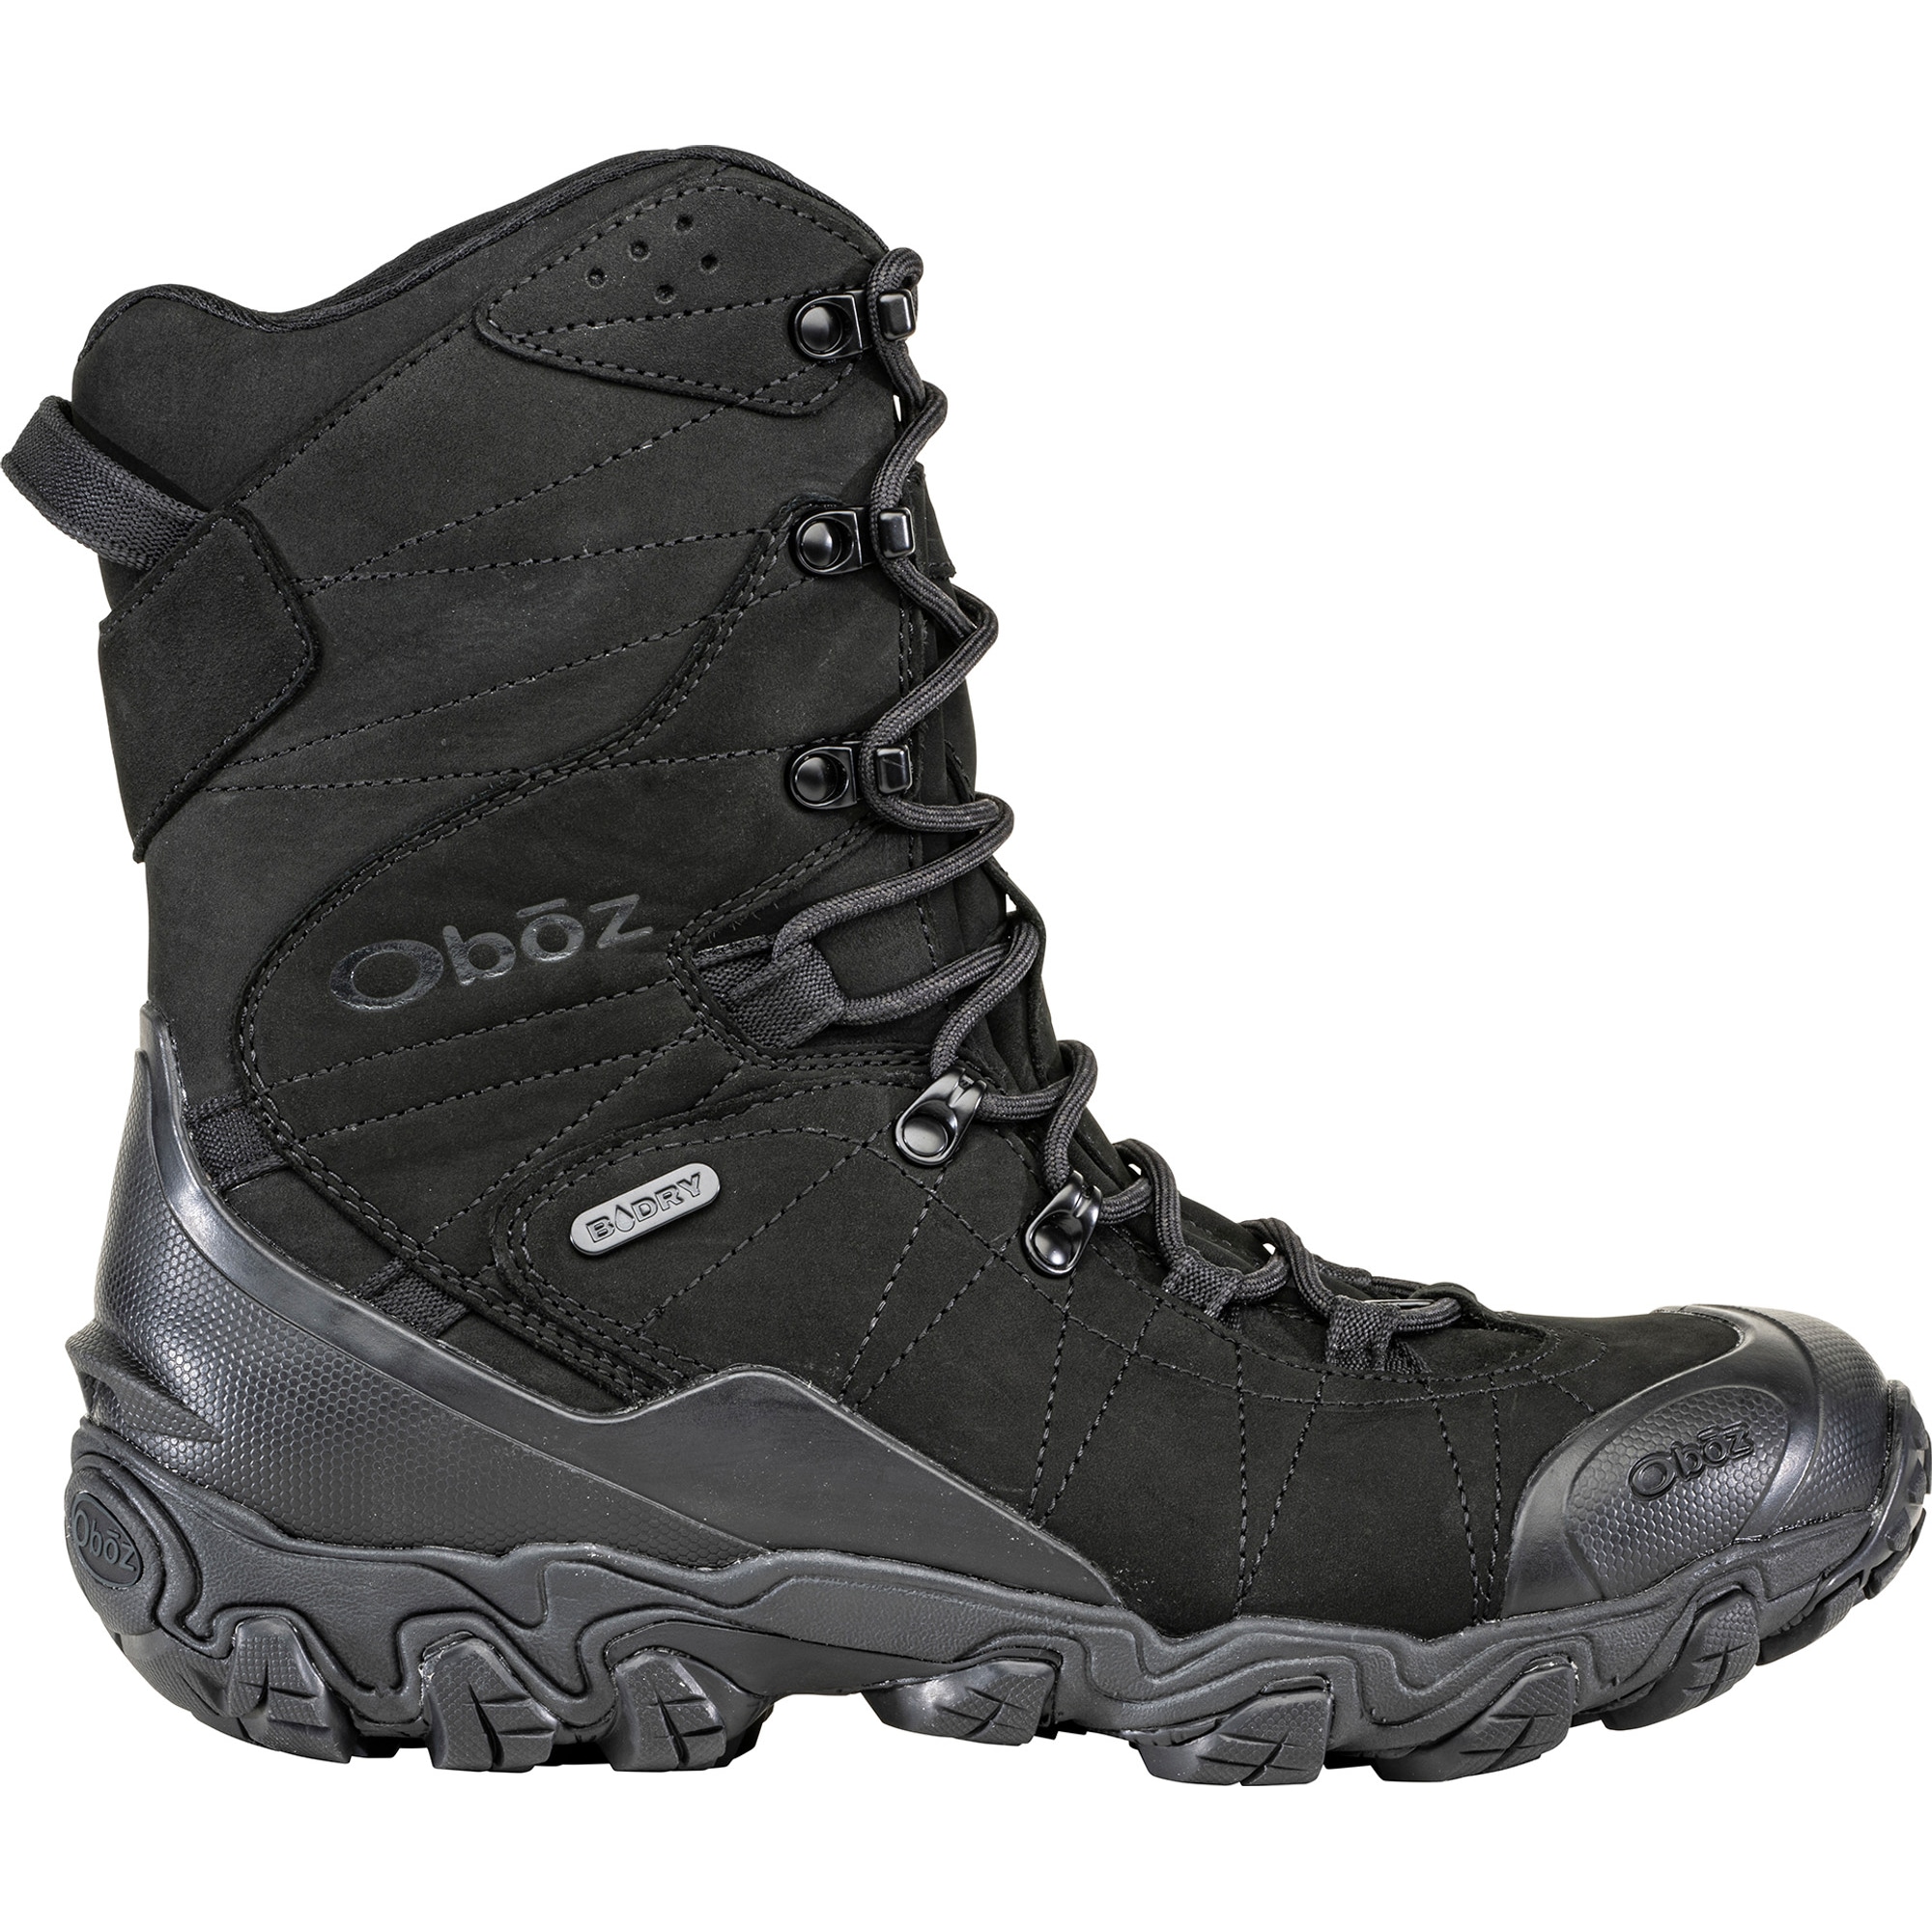 Men's Bridger 10" Insulated Waterproof Boots